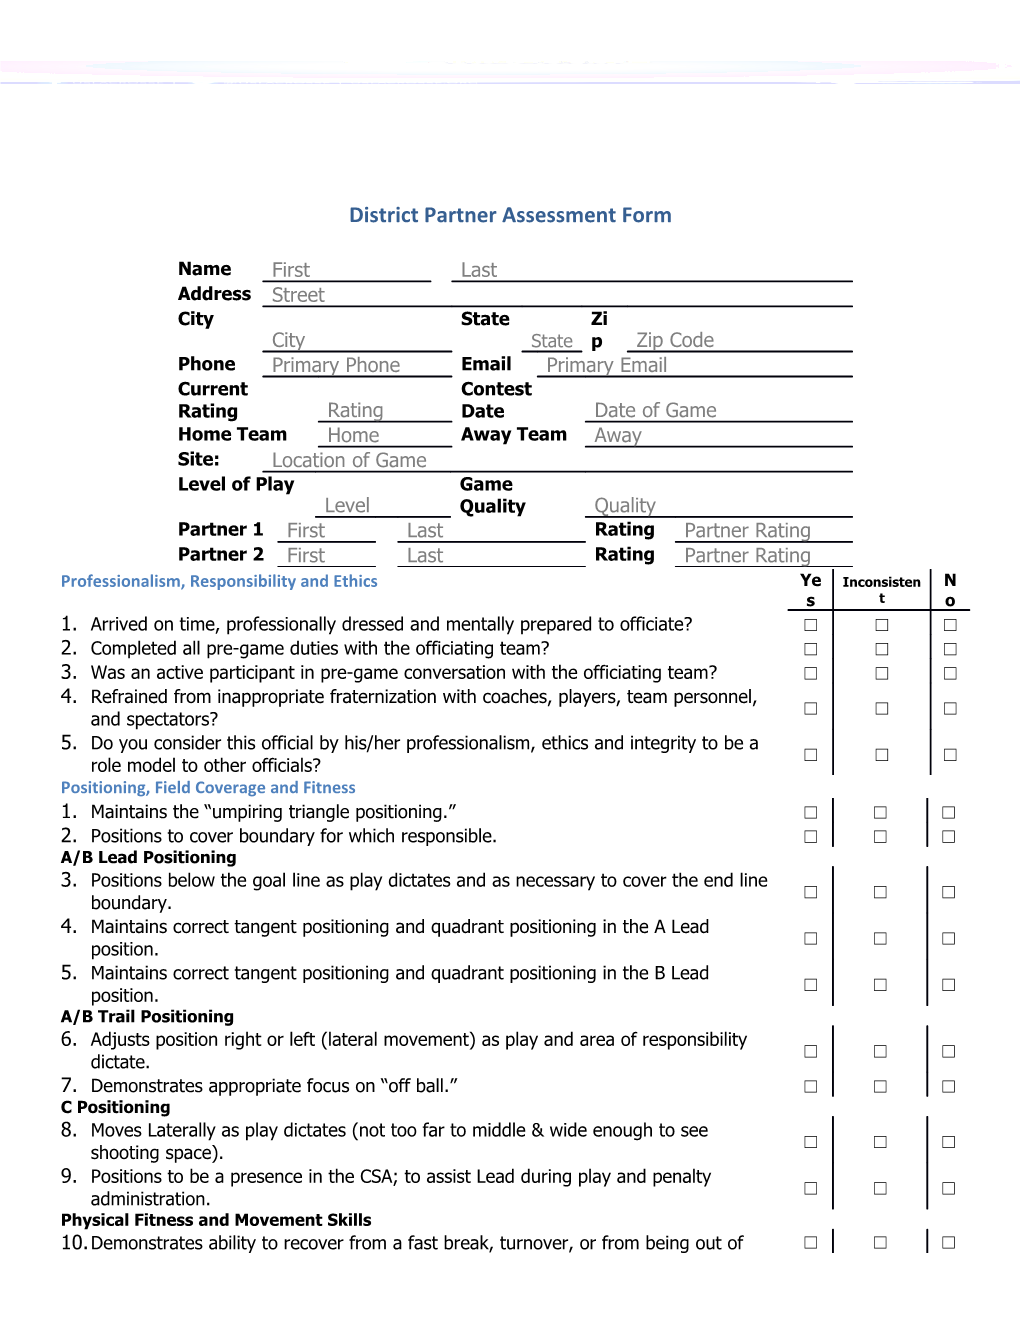 District Partner Assessment Form